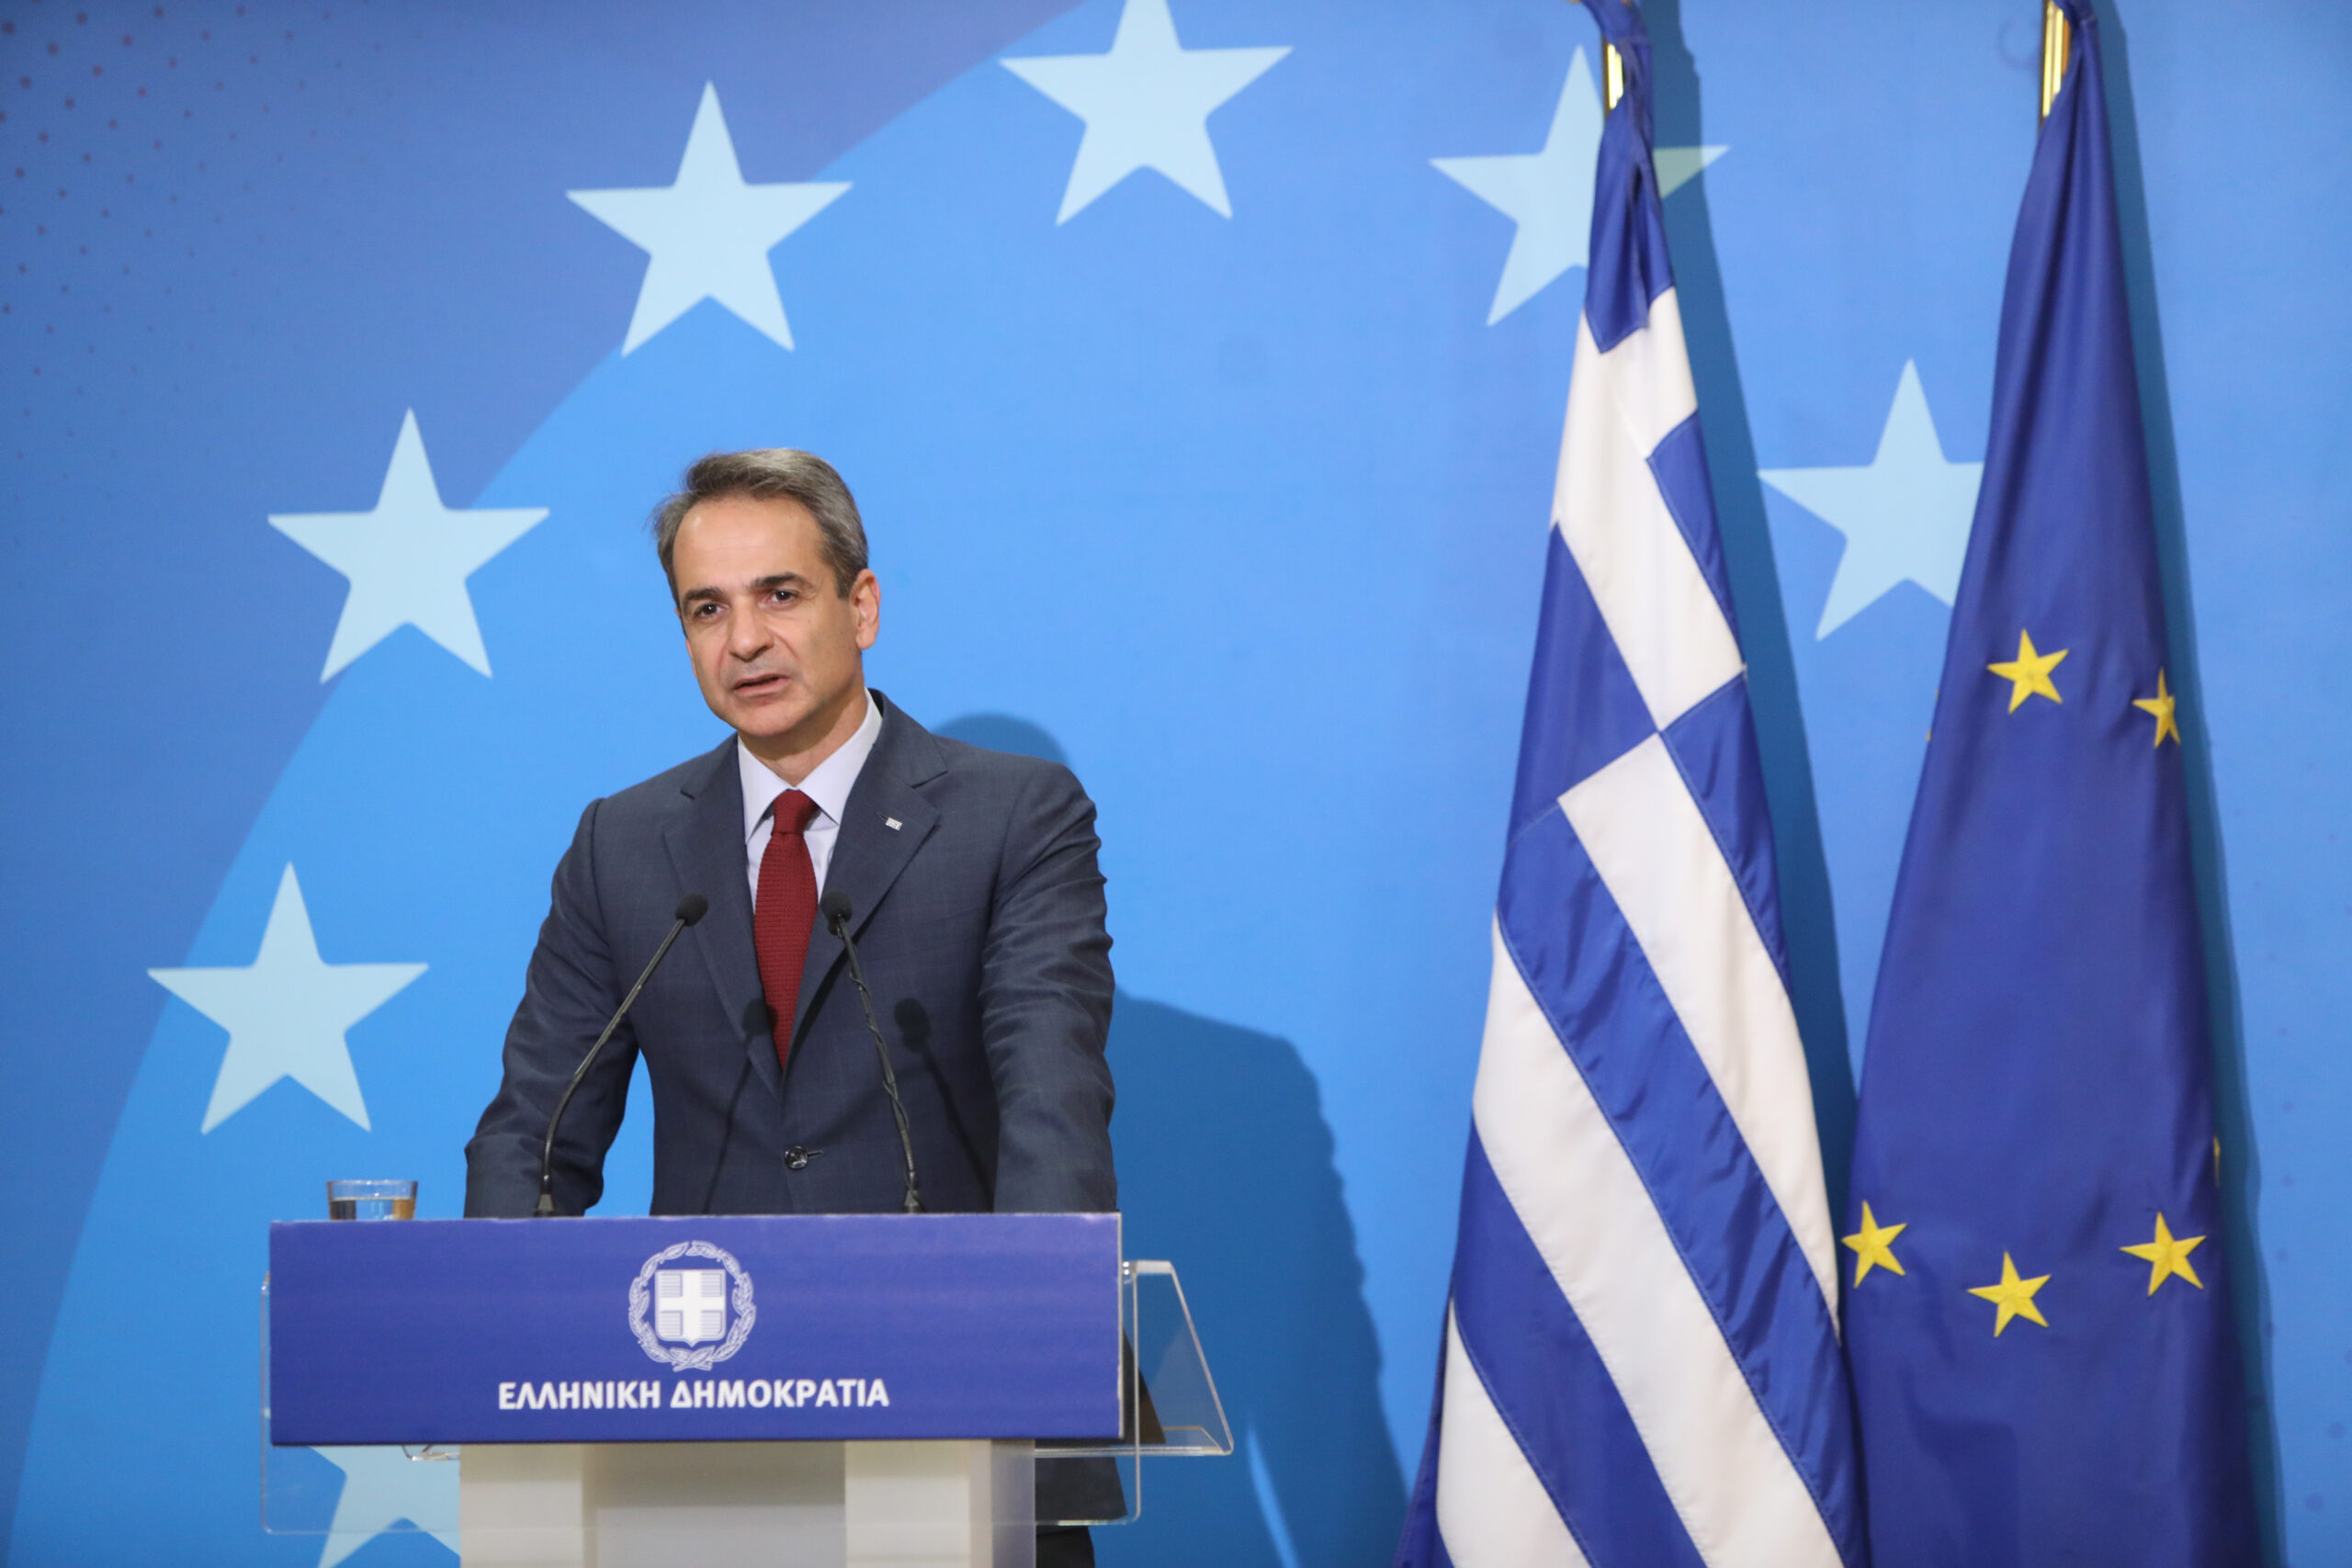 Κυρ. Μητσοτάκης:  Εάν η Ελλάδα προκληθεί από την Τουρκία στη Σύνοδο του ΝΑΤΟ θα δοθούν οι κατάλληλες απαντήσεις